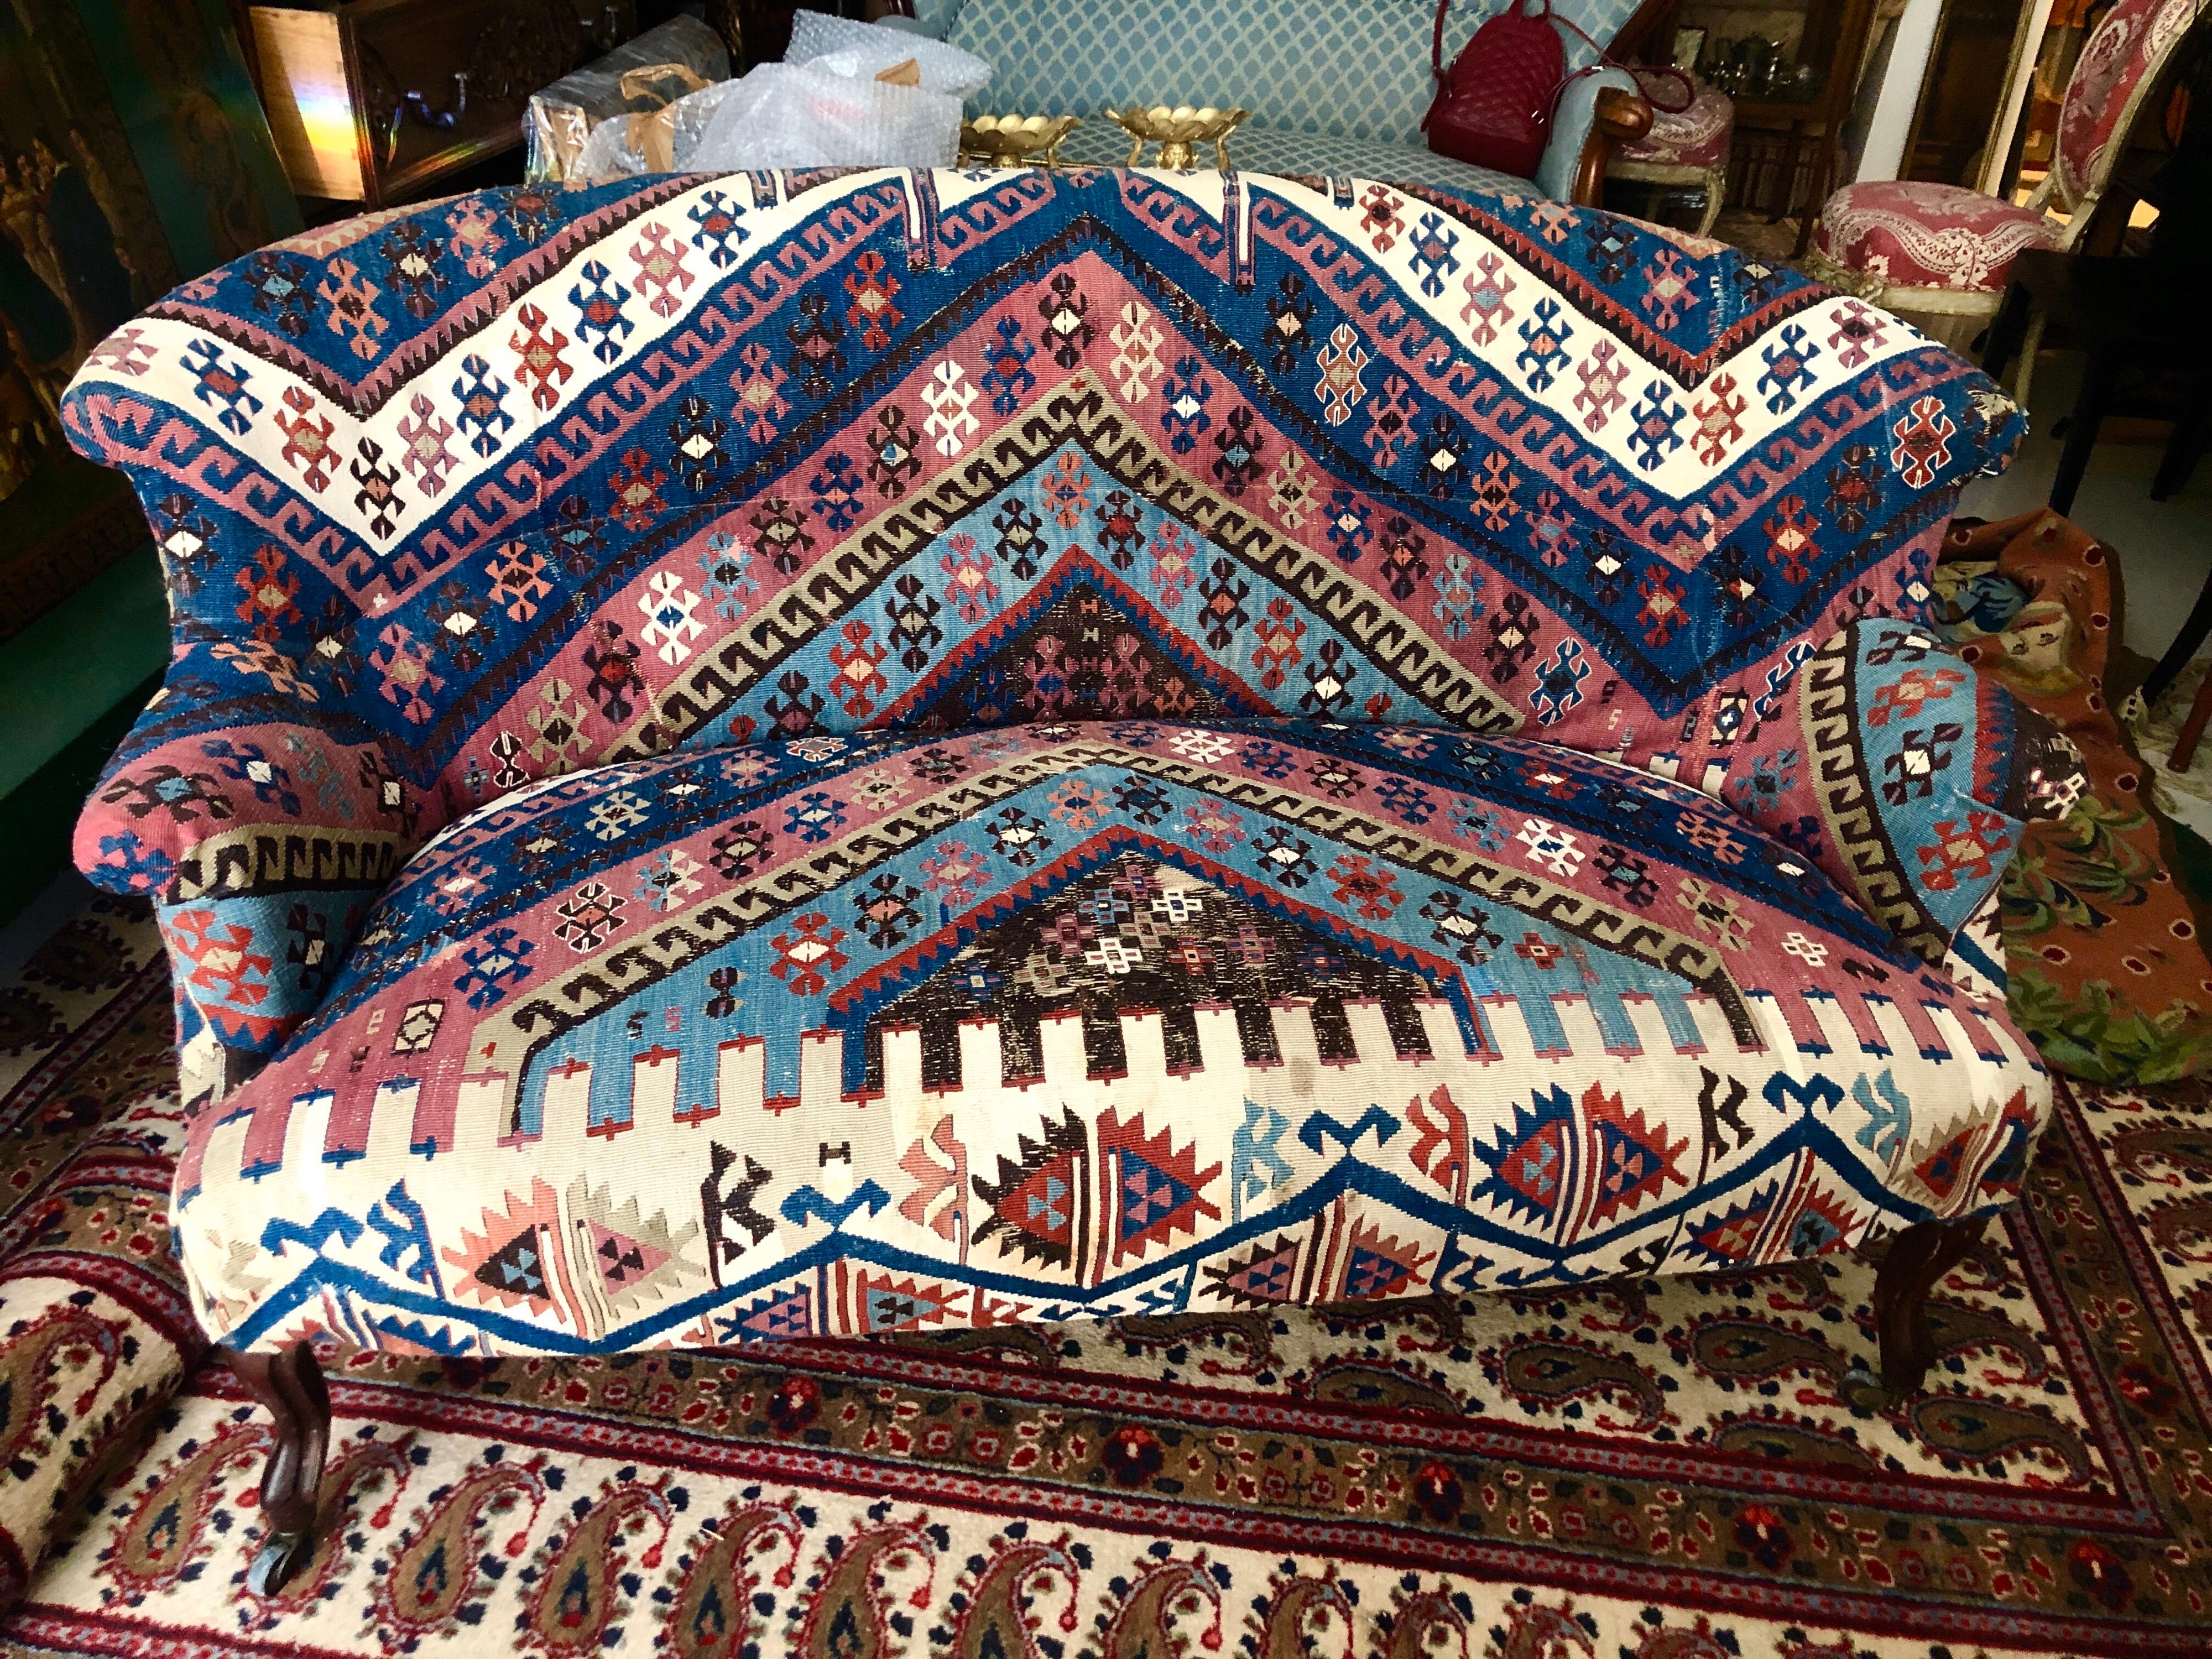 Rare et magnifique canapé français garni d'un tapis ancien en laine nouée à la main. La pièce repose sur quatre pieds en bois incurvés avec des roulettes en laiton à l'extrémité.
France, datant d'environ 1920.